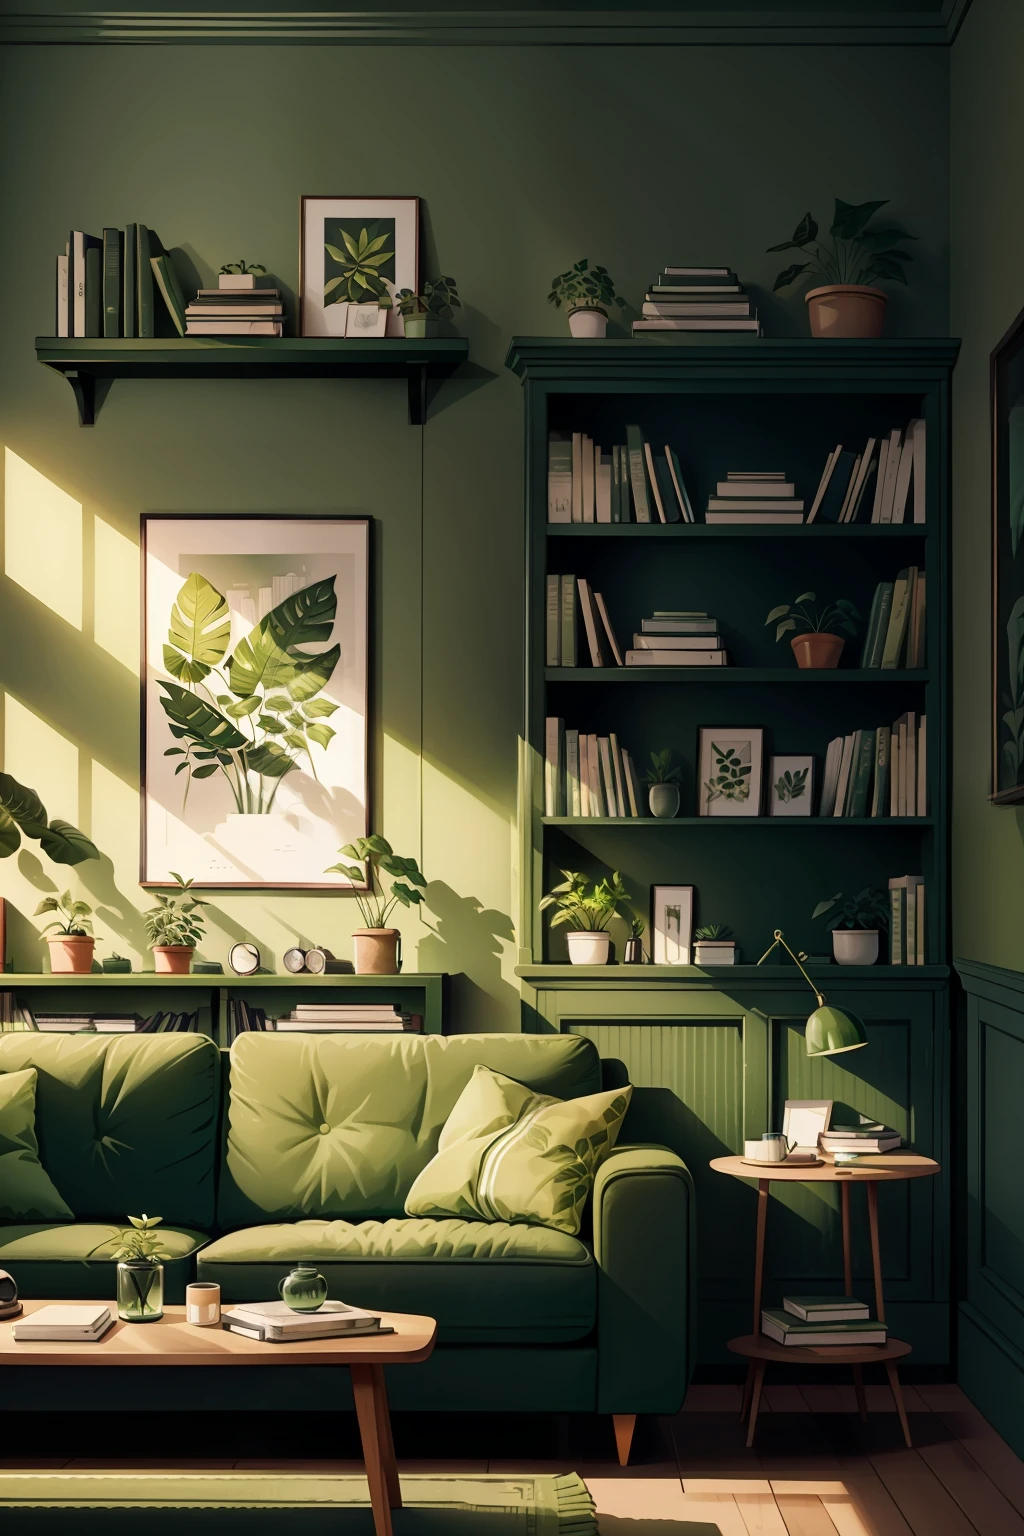 客厅里有一张绿色的沙发，墙上挂着一株绿色植物，书架上摆满了书籍